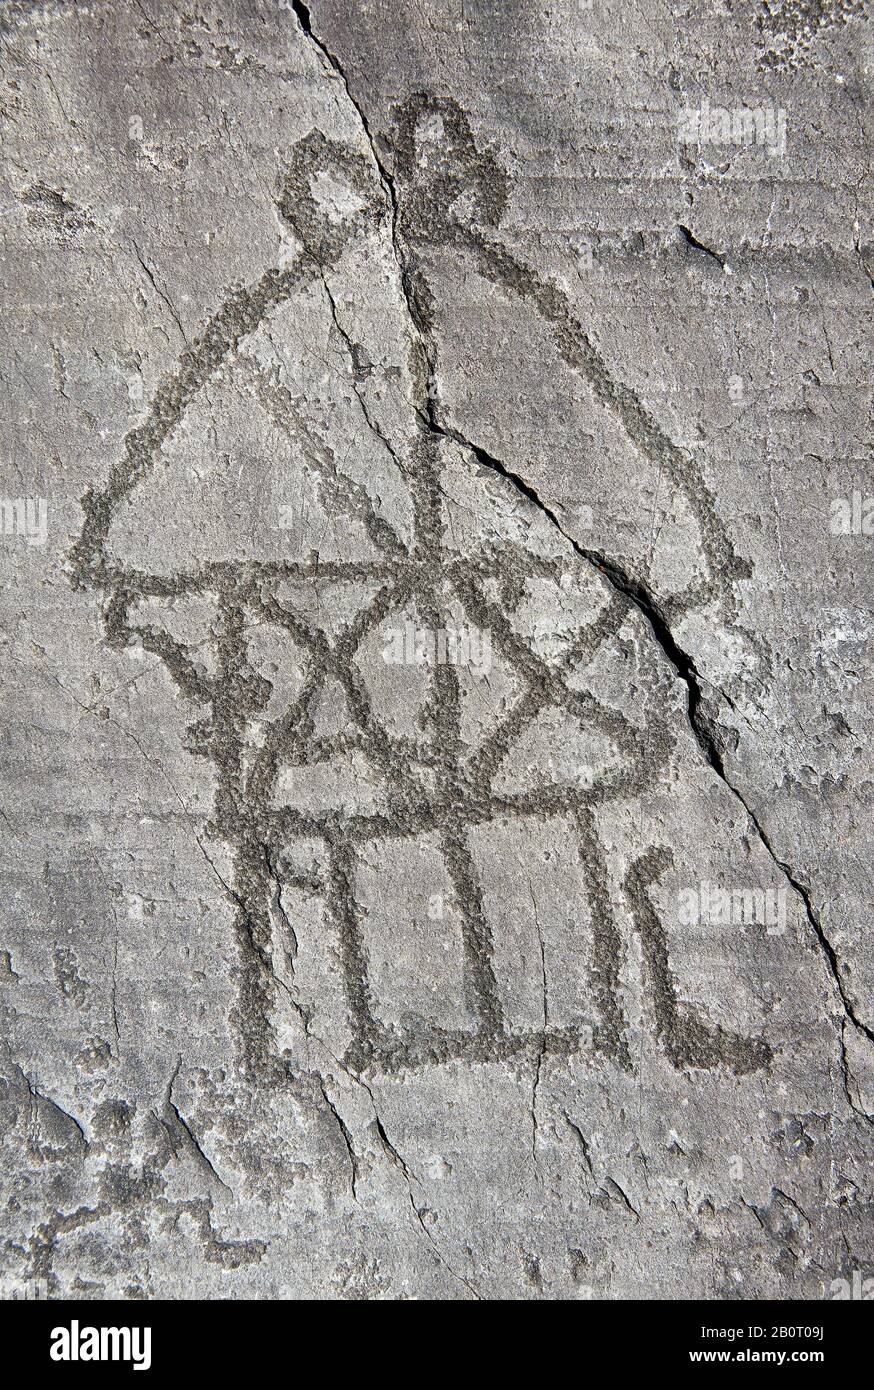 Petroglyph, Steinschnitzerei, eines Hauses auf Stelzen. Von den alten Camuni-Leuten in der Eisenzeit zwischen 1000-1200 v. Chr. geschnitzt. Rock no 24, Foppi di Nadro, Stockfoto